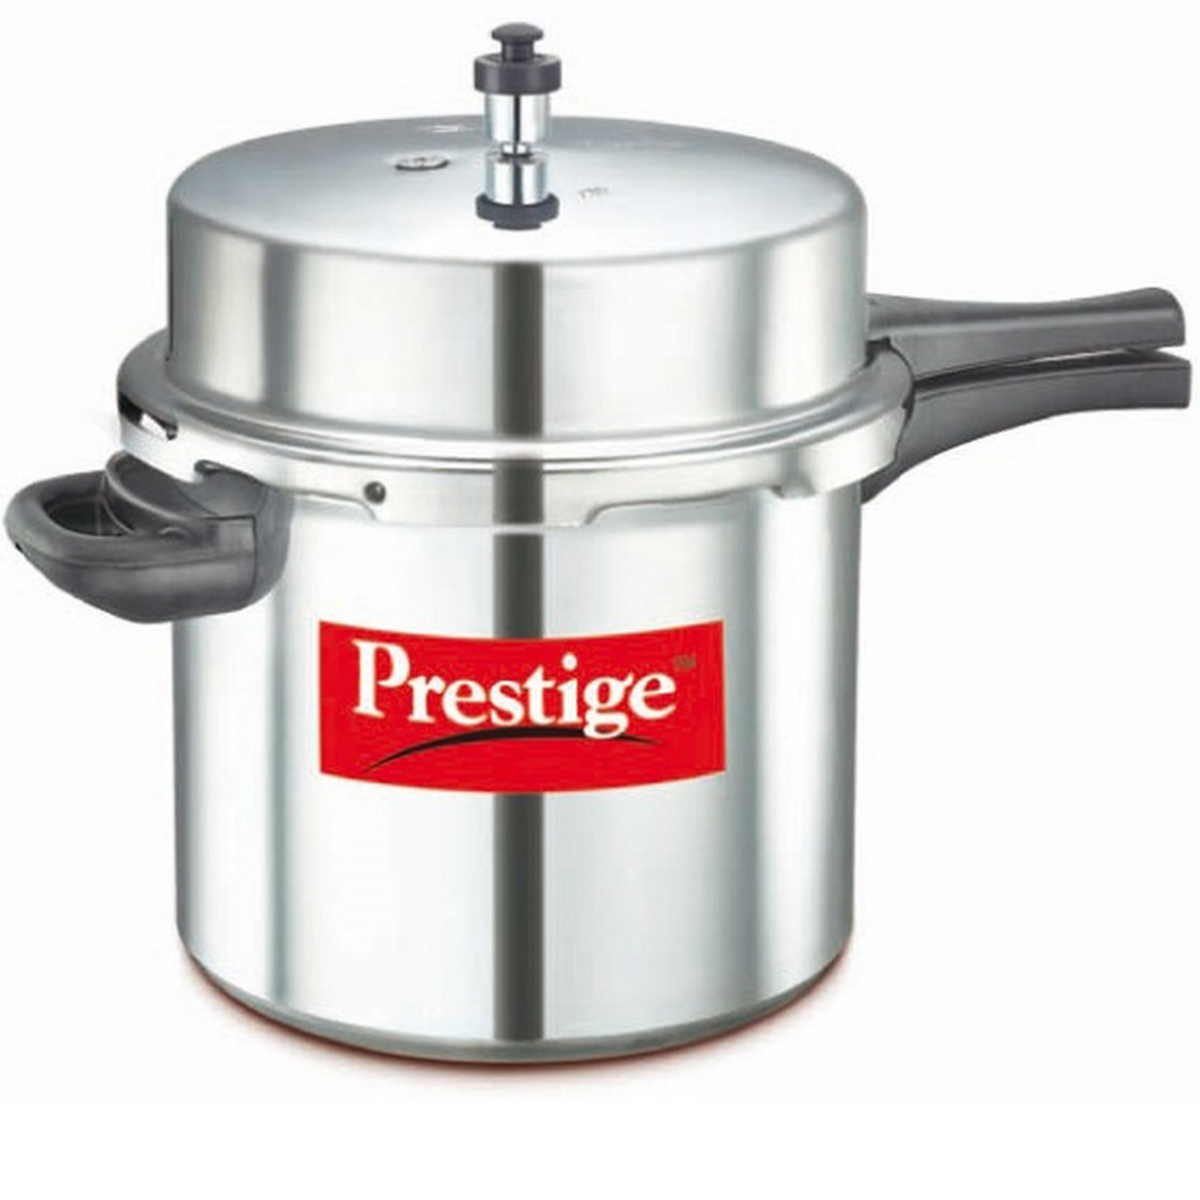 Prestige Pressure Cooker Popular 12 Ltr